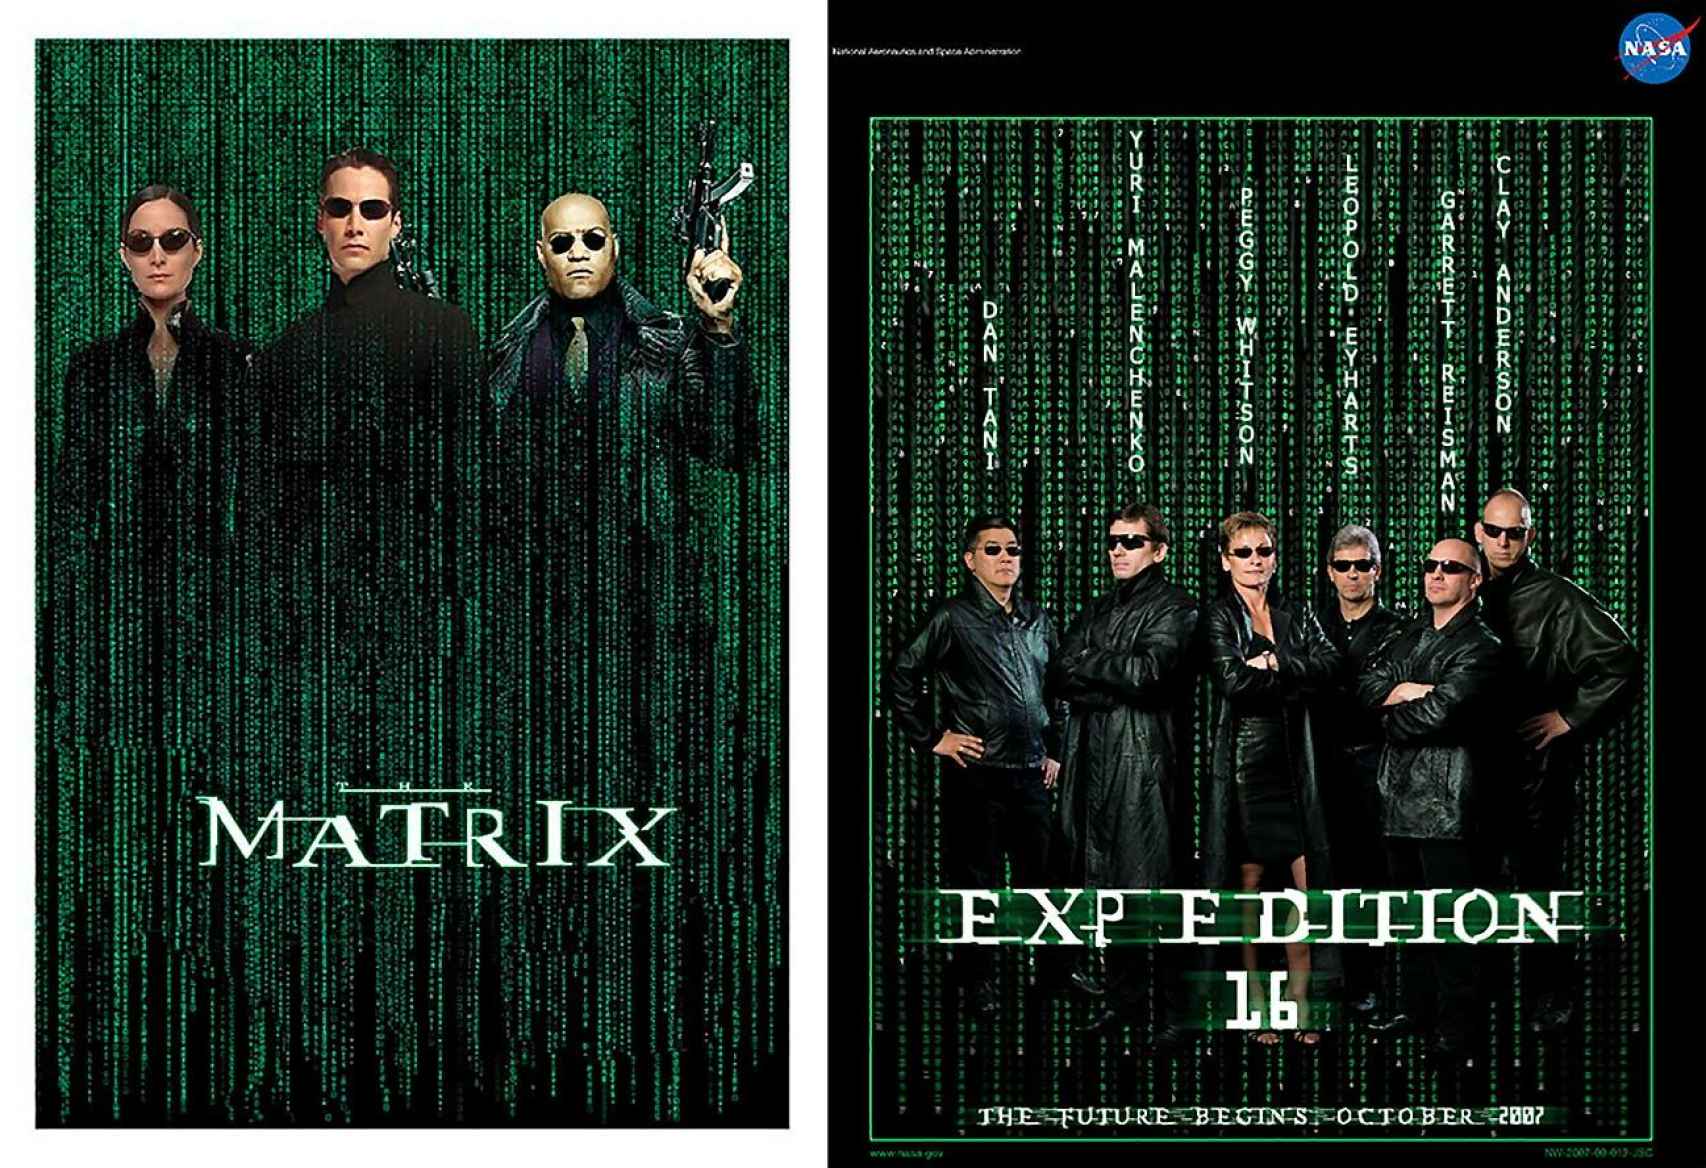 Izquierda, cartel original de Matrix; derecha, póster de la NASA para la expedición 16